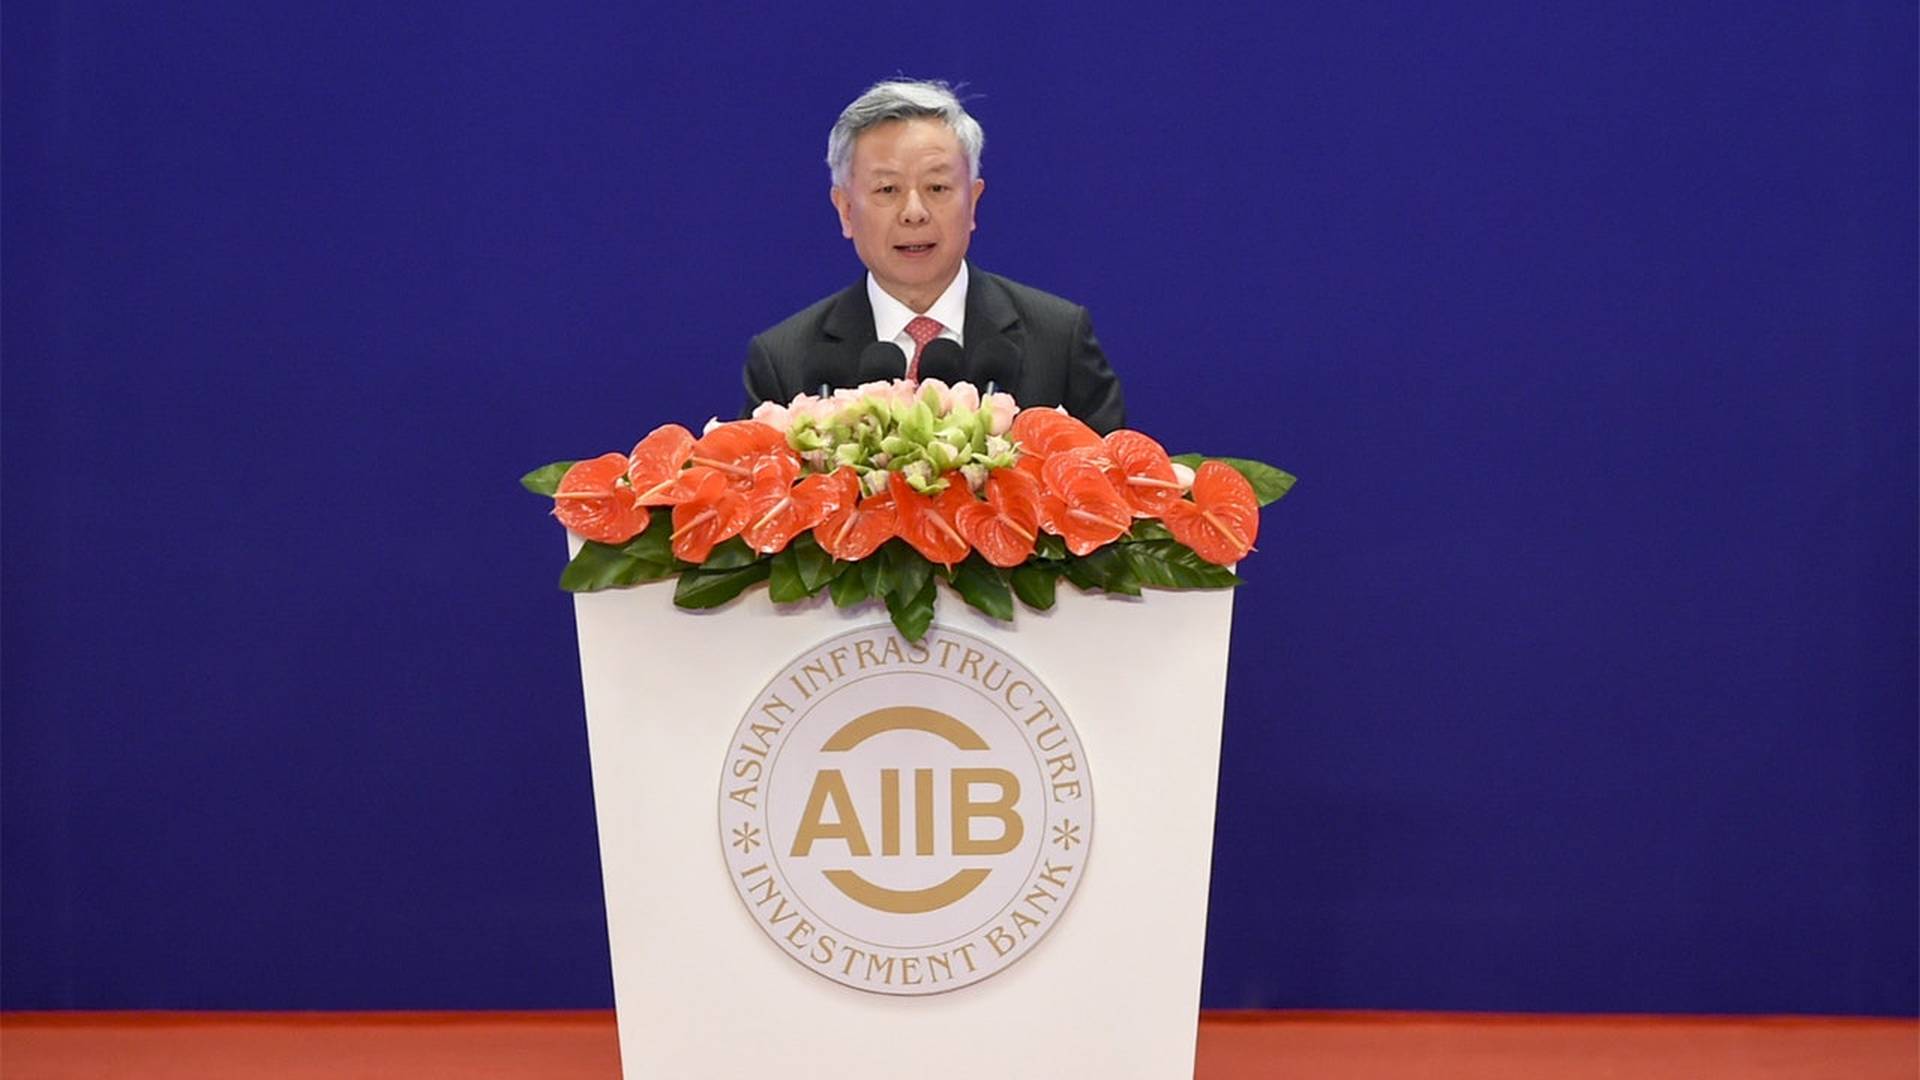 亞洲基礎設施投資銀行行長對當前中國與世界形勢的通盤思考